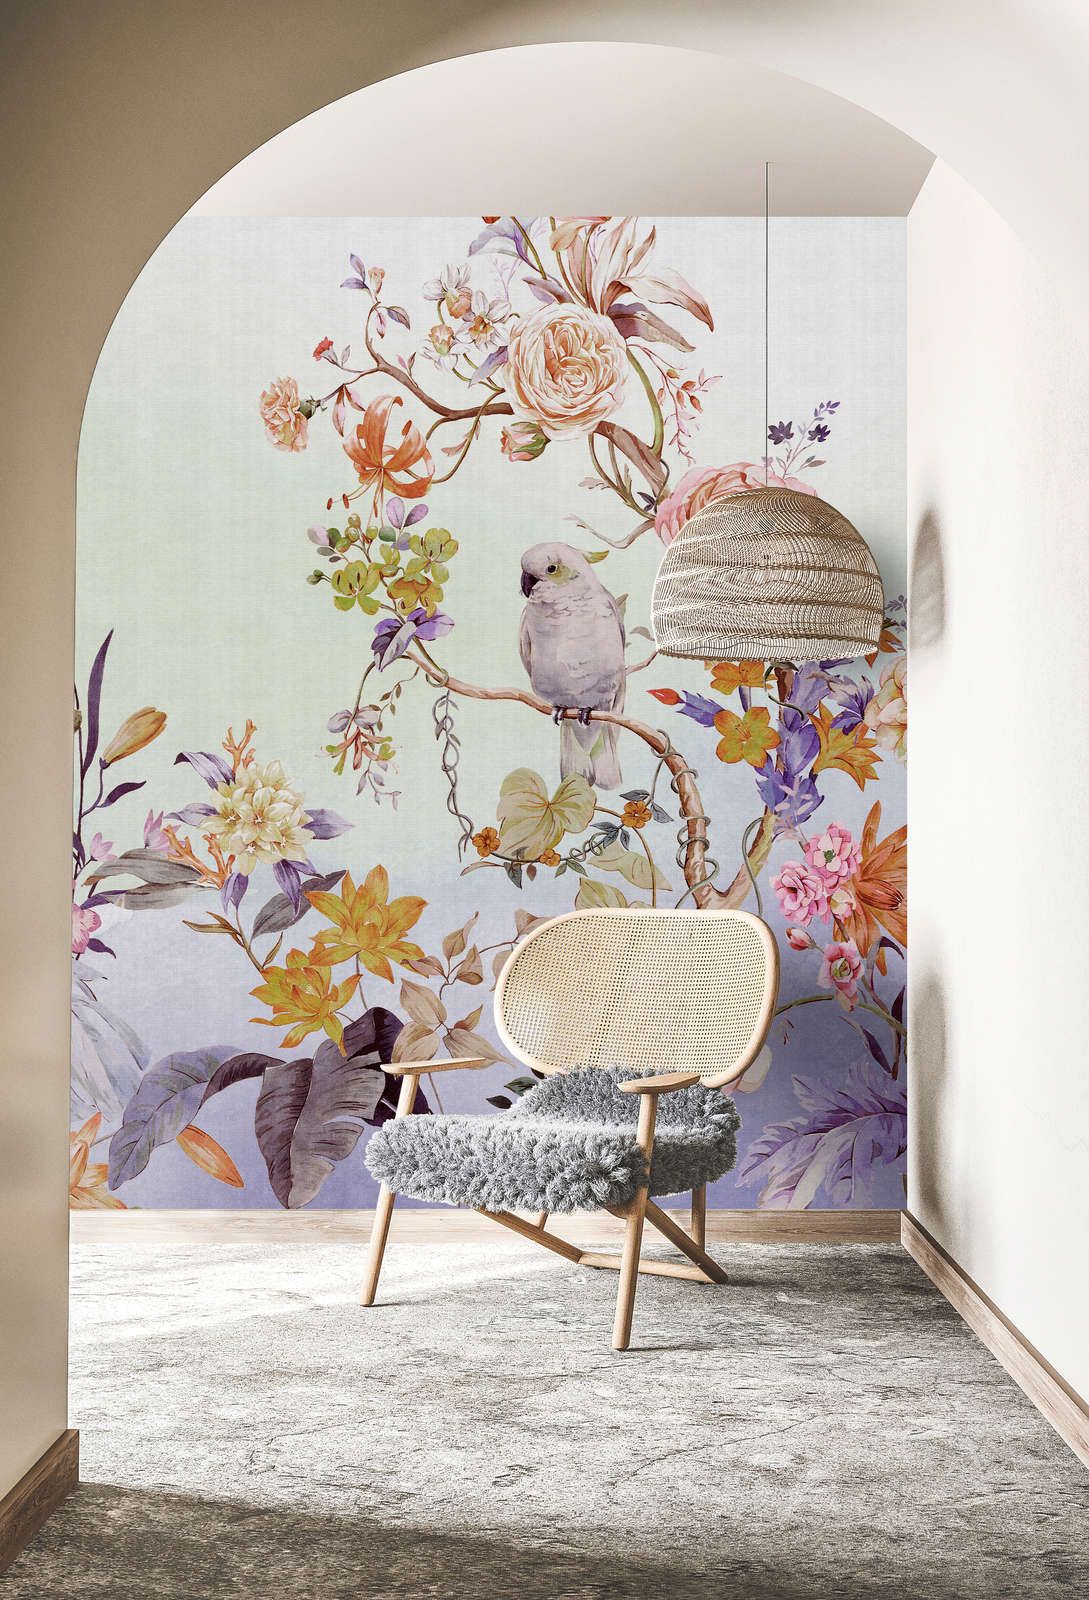             Fotomural »paradise« - Pájaro y flores con degradado de colores y textura de lino en el fondo - Coloreado | Tela no tejida de alta calidad lisa y ligeramente brillante
        